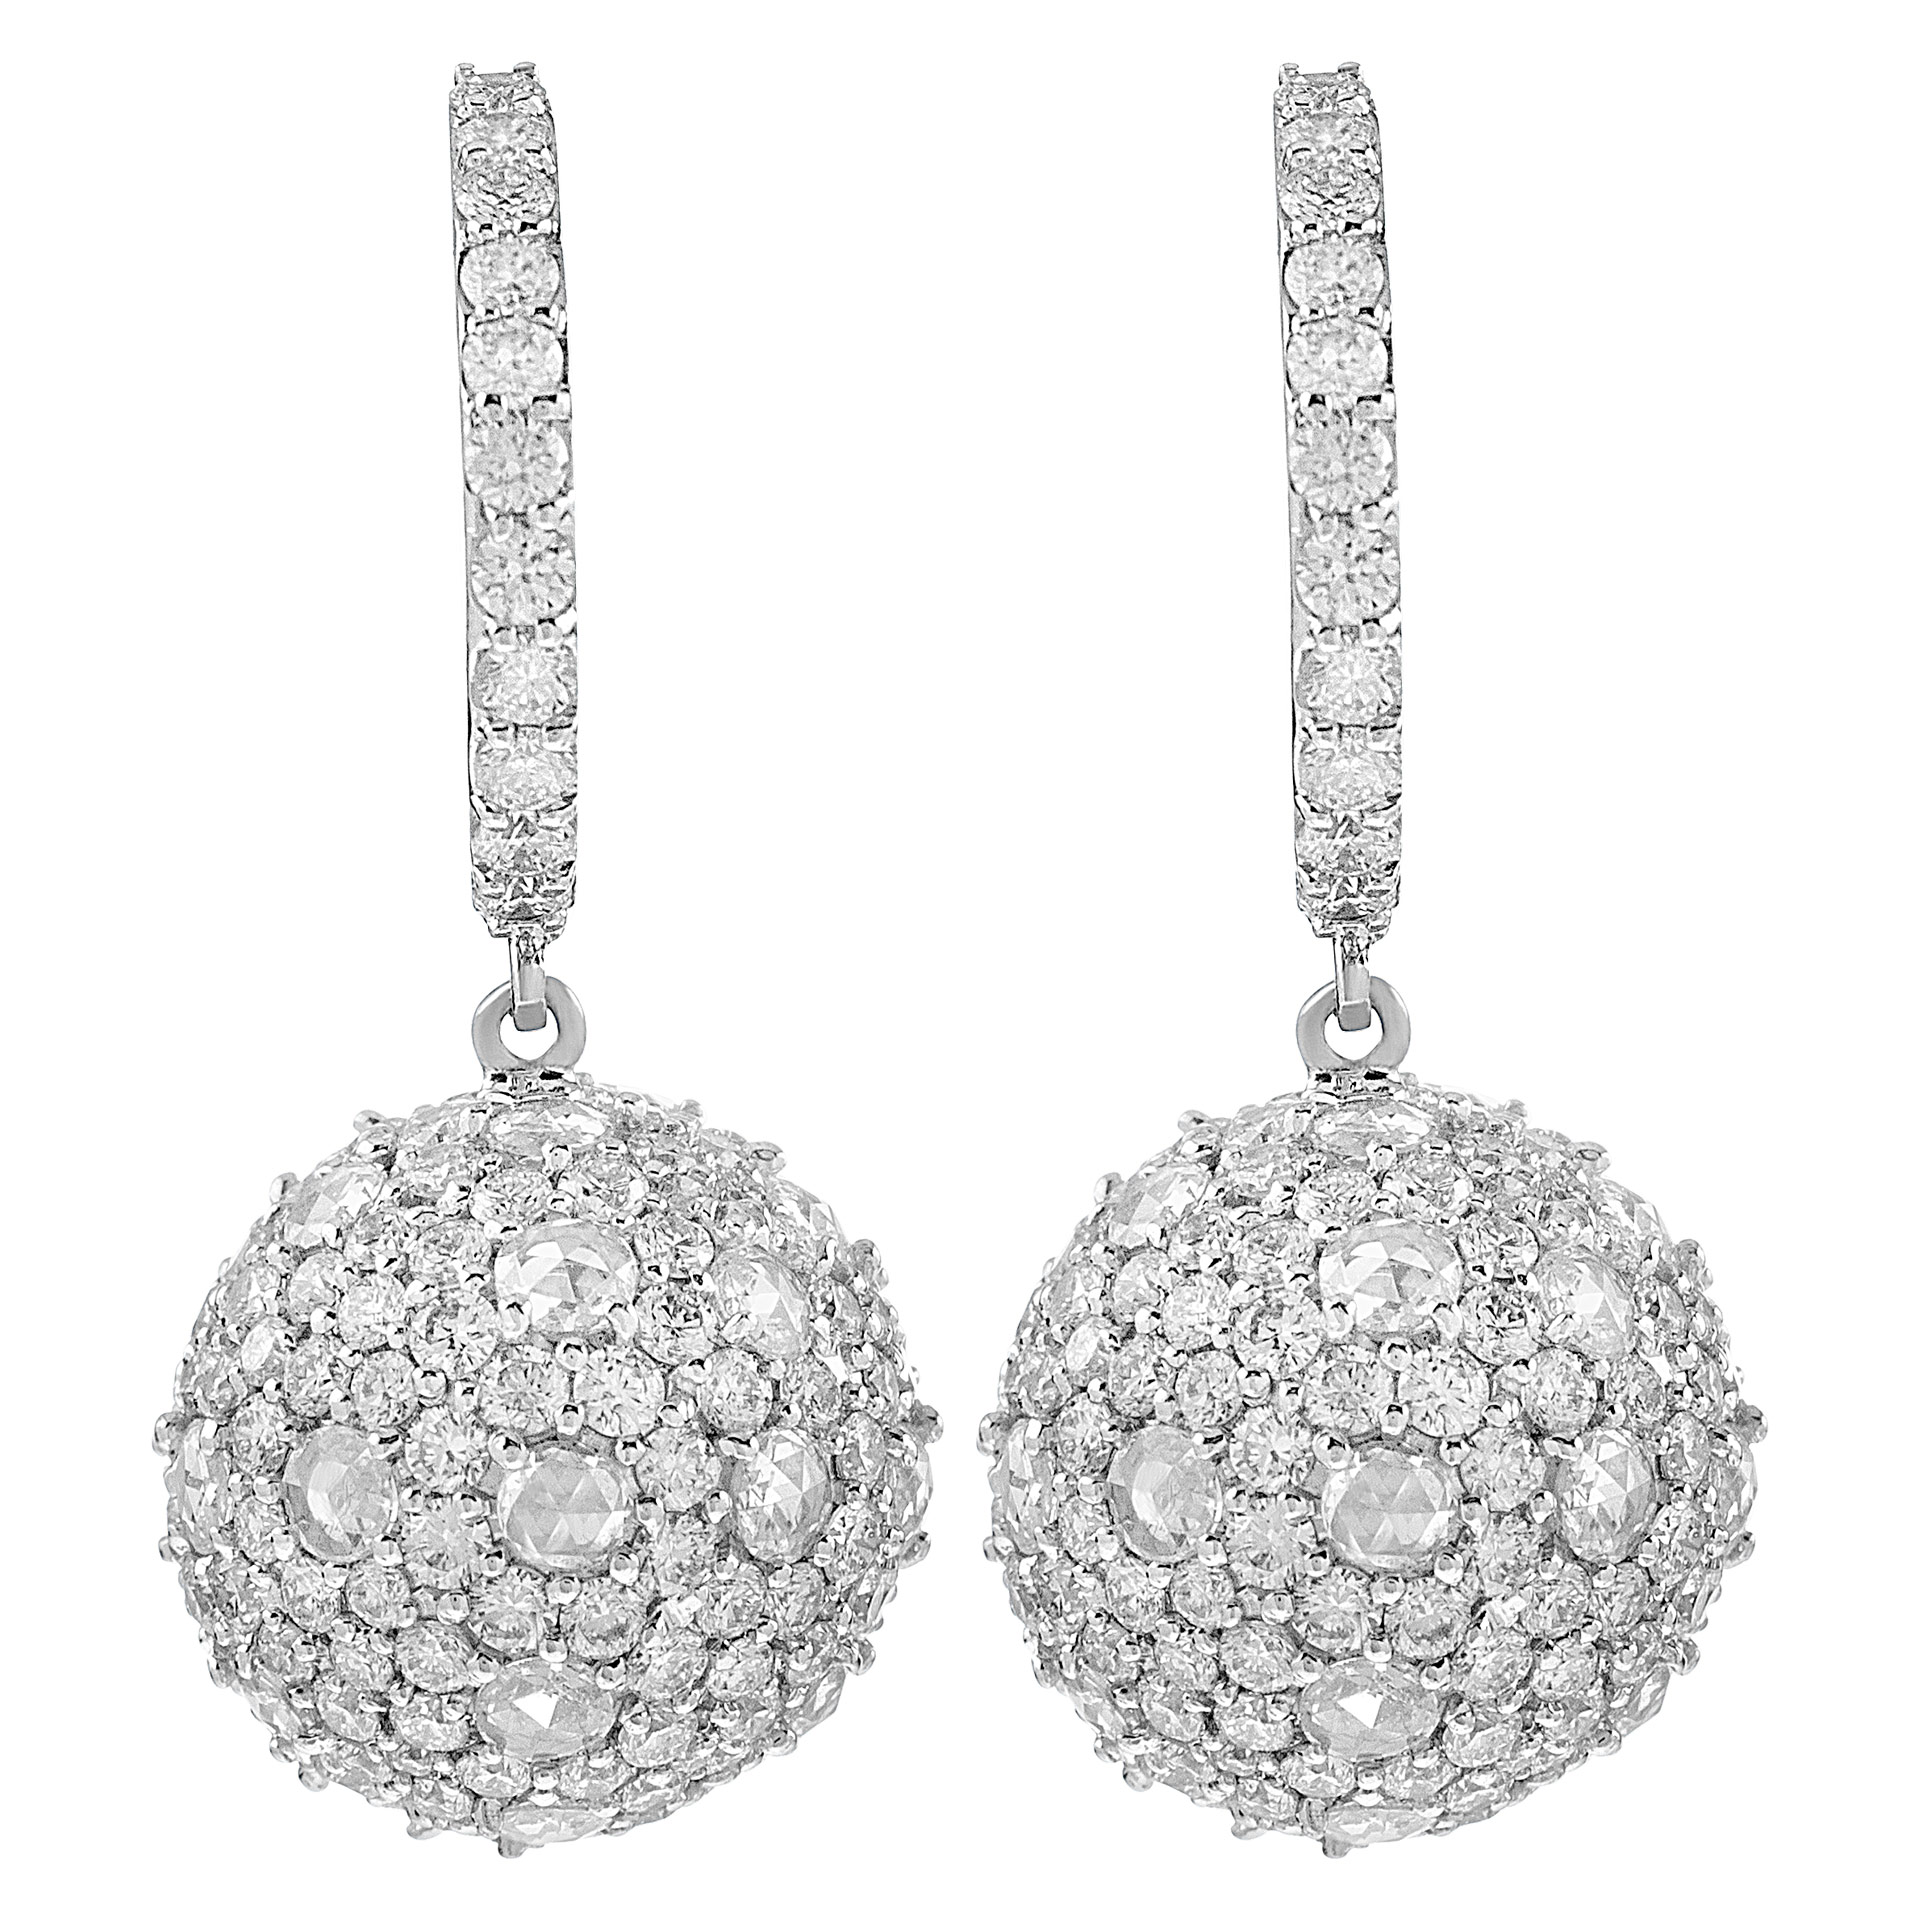 Diamond balls earrings in 18k w/g image 1